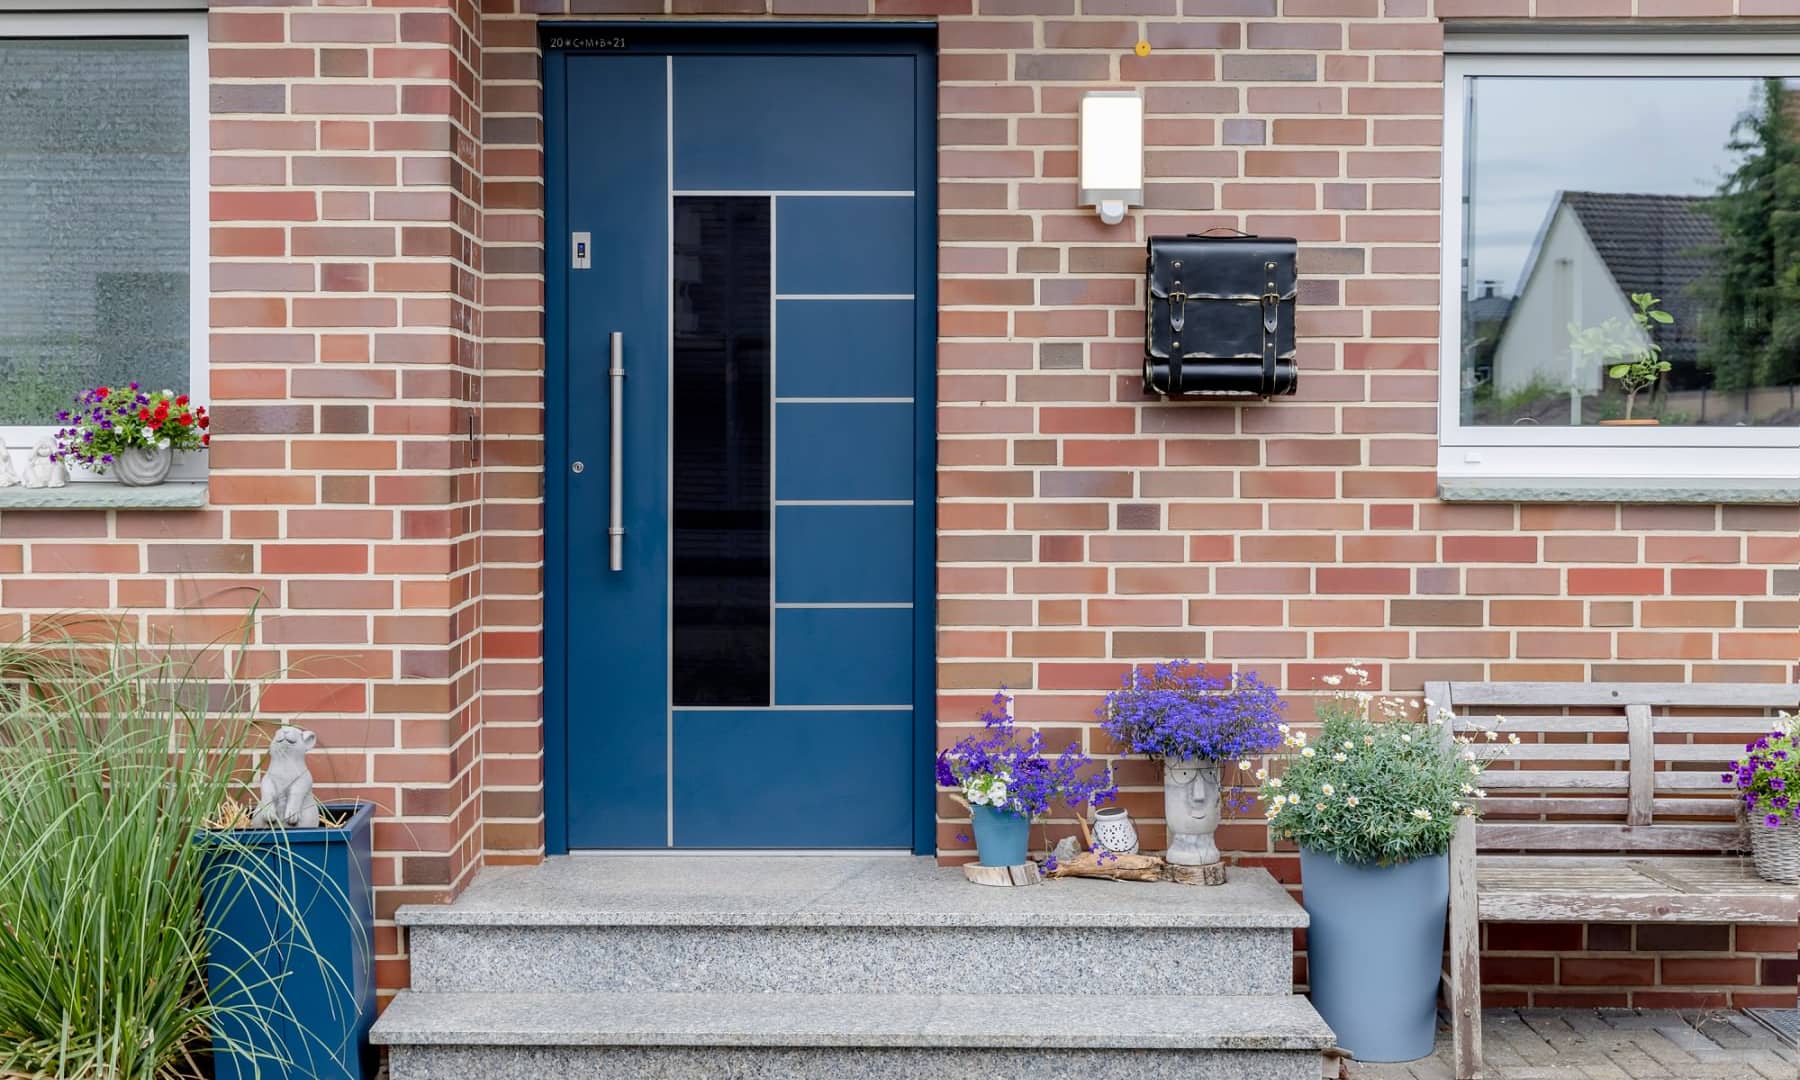 Eine dunkle Haustür in Oelde: Das Blau wirkt frisch im roten Klinkerbau